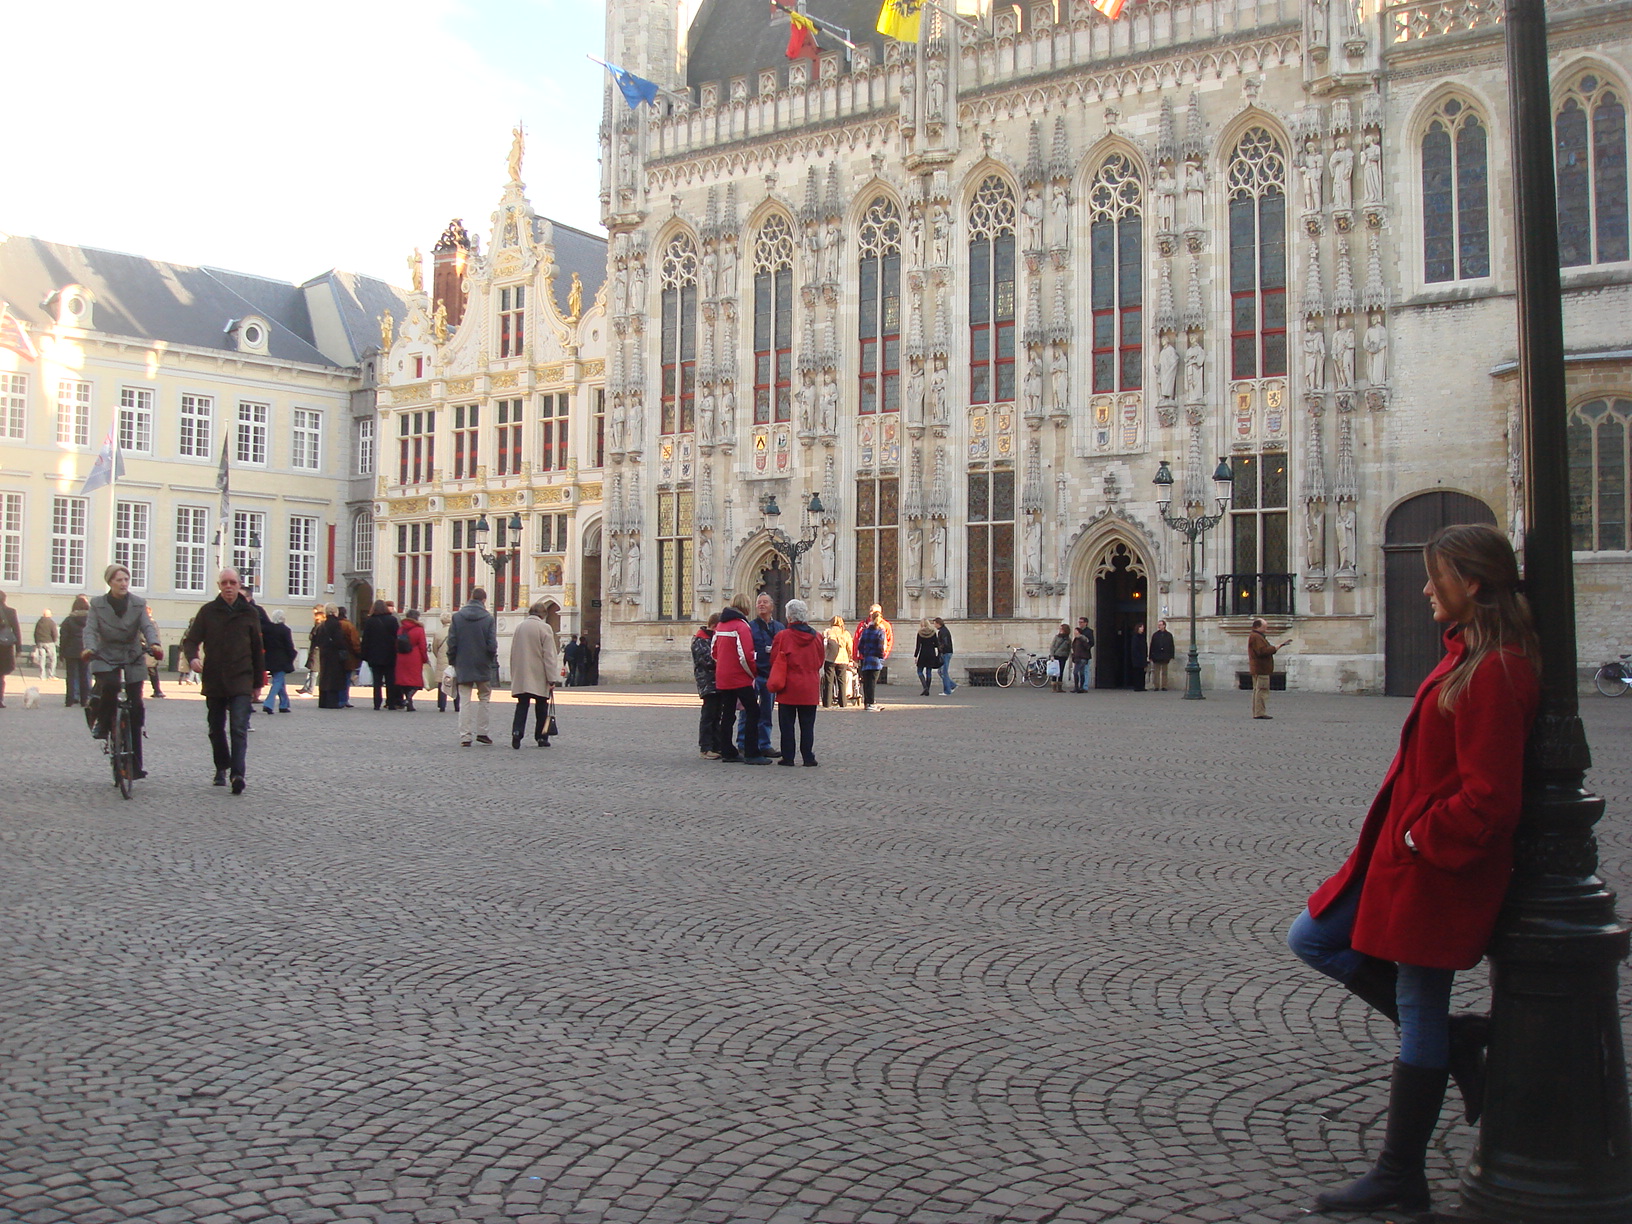 Burg Square, Bruges